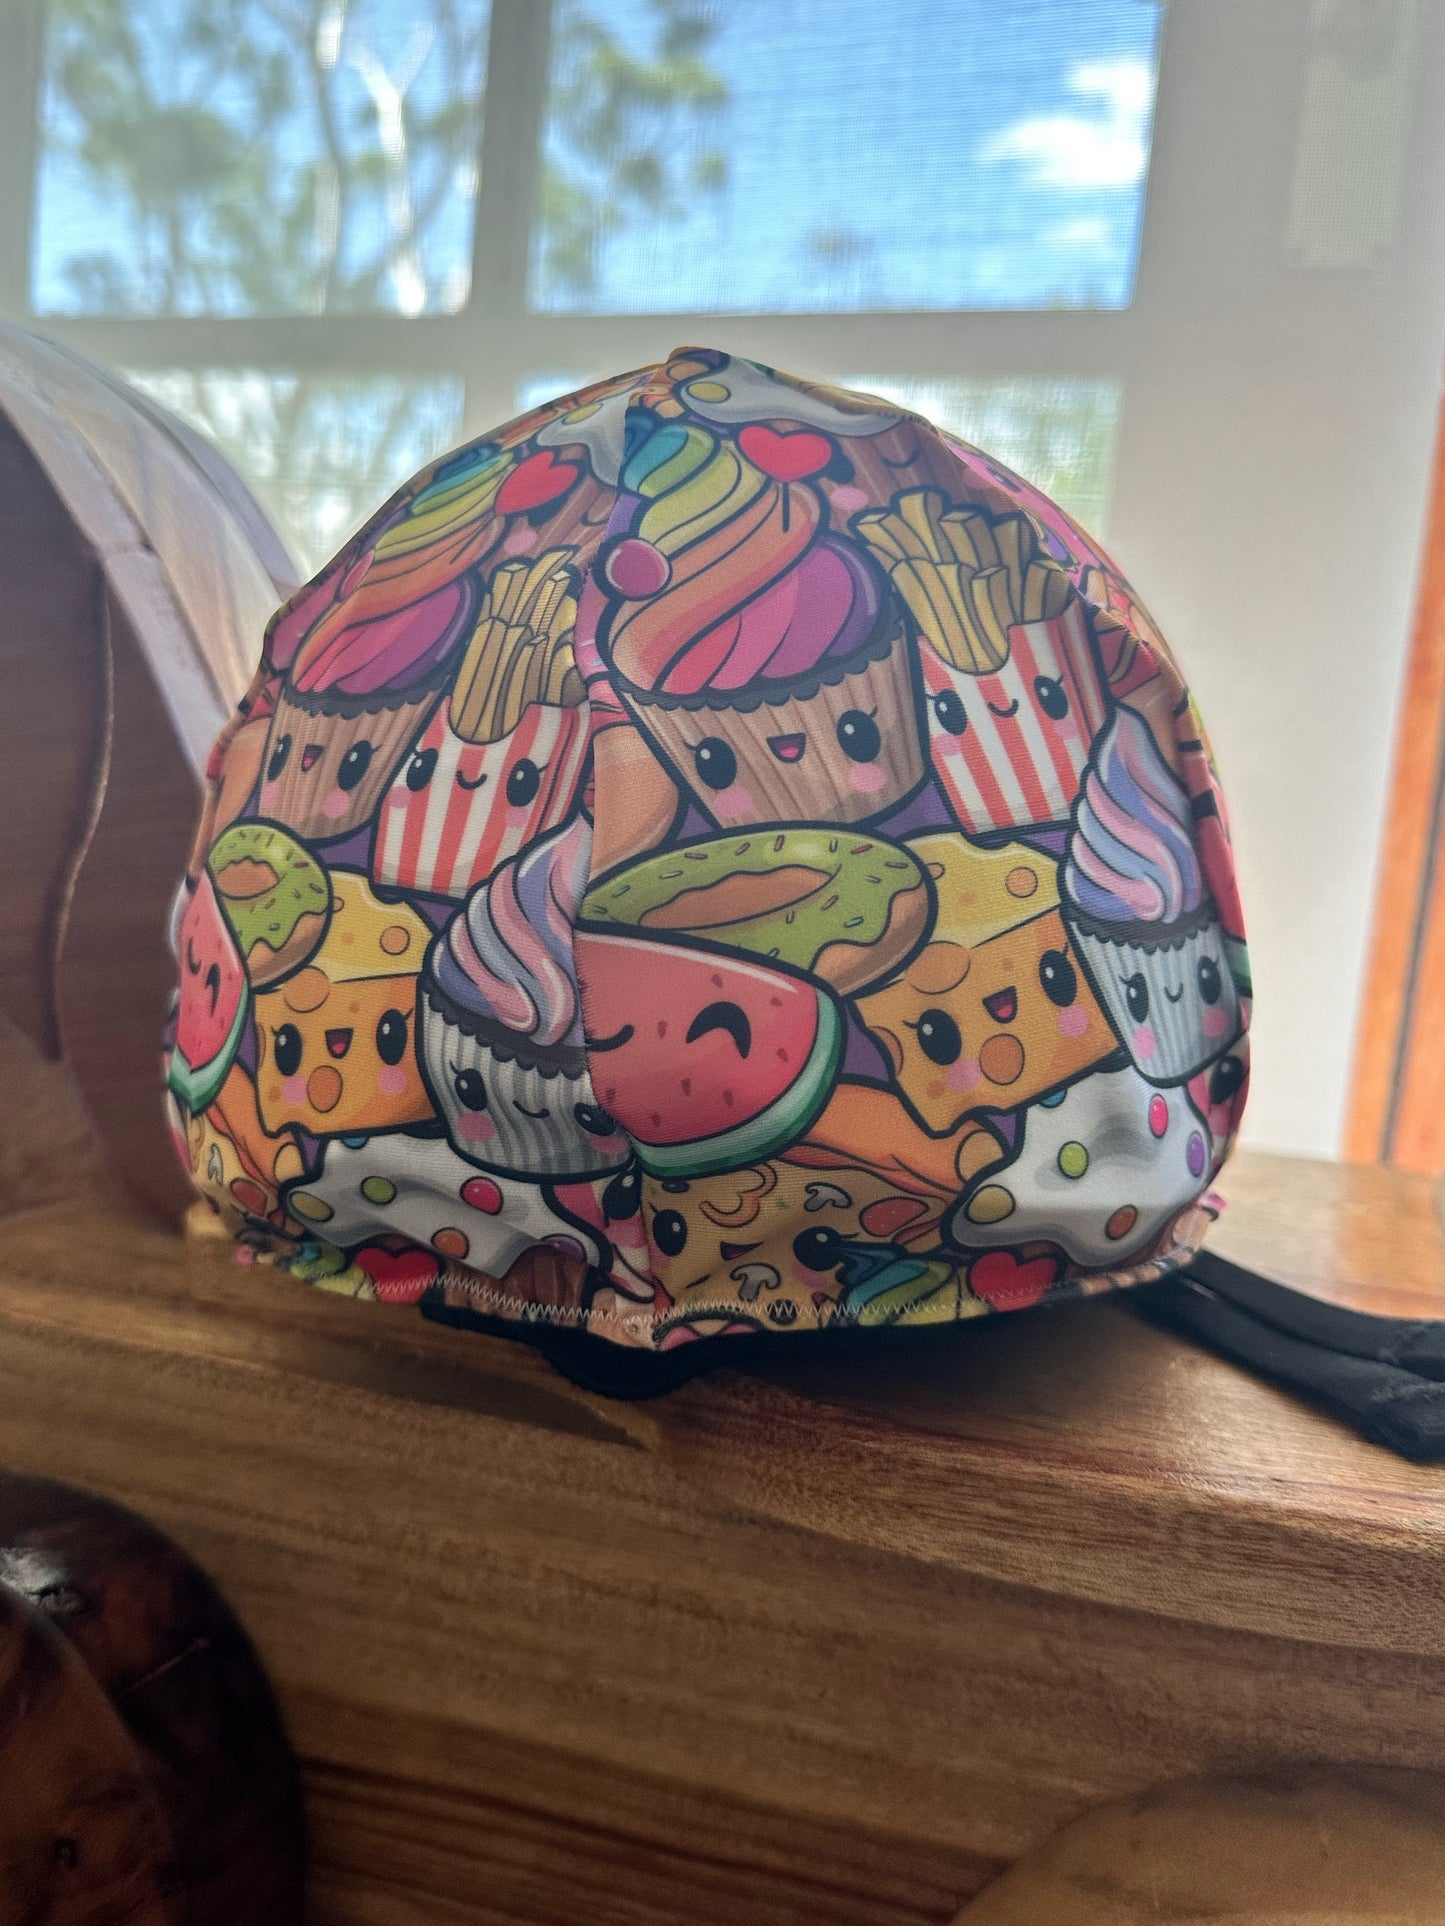 Cutie Foods Helmet Cover